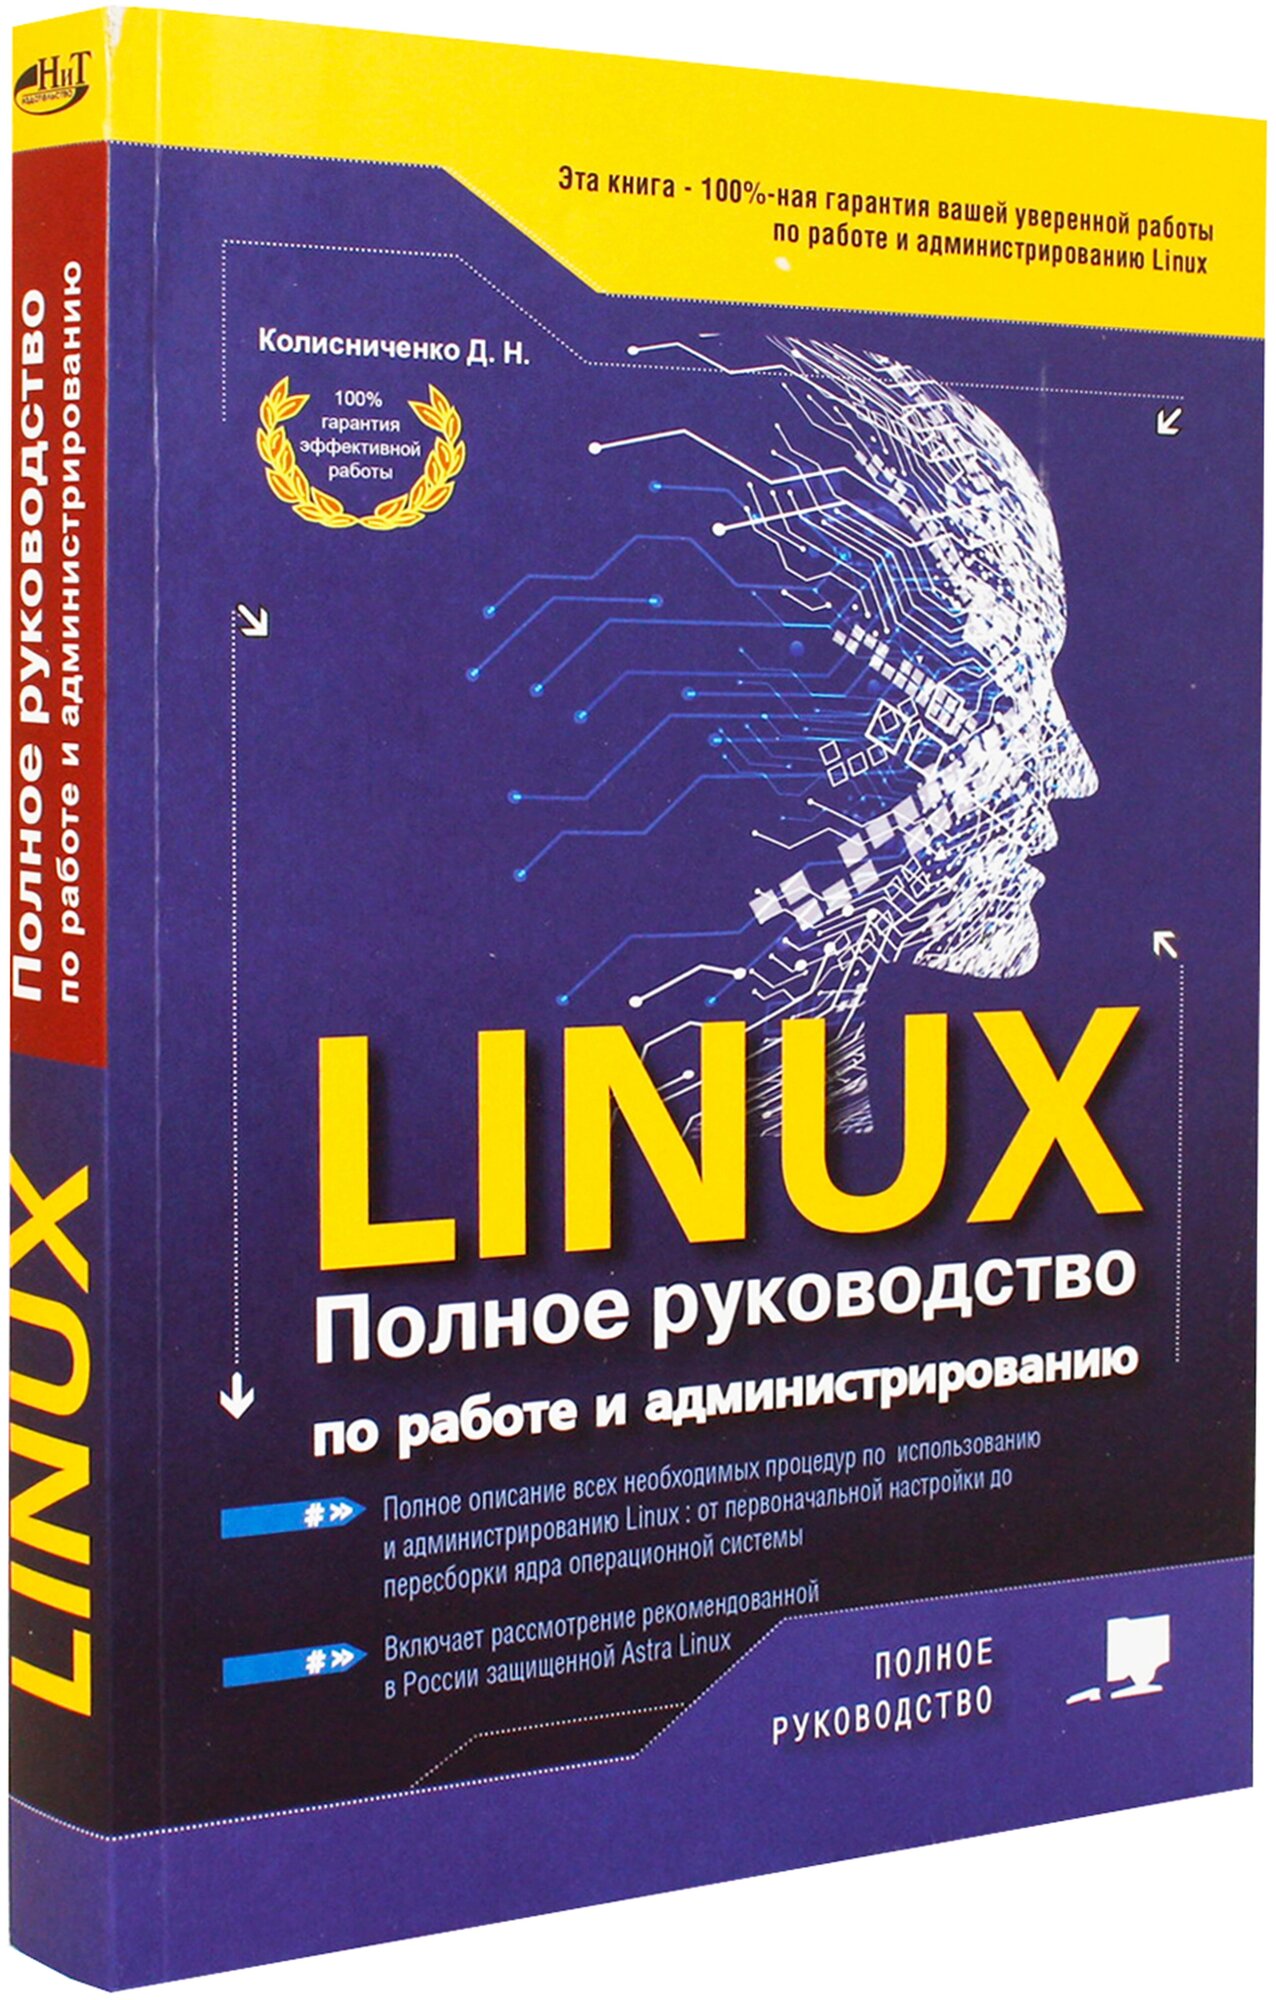 LINUX Полное руководство по работе и администрированию - фото №3